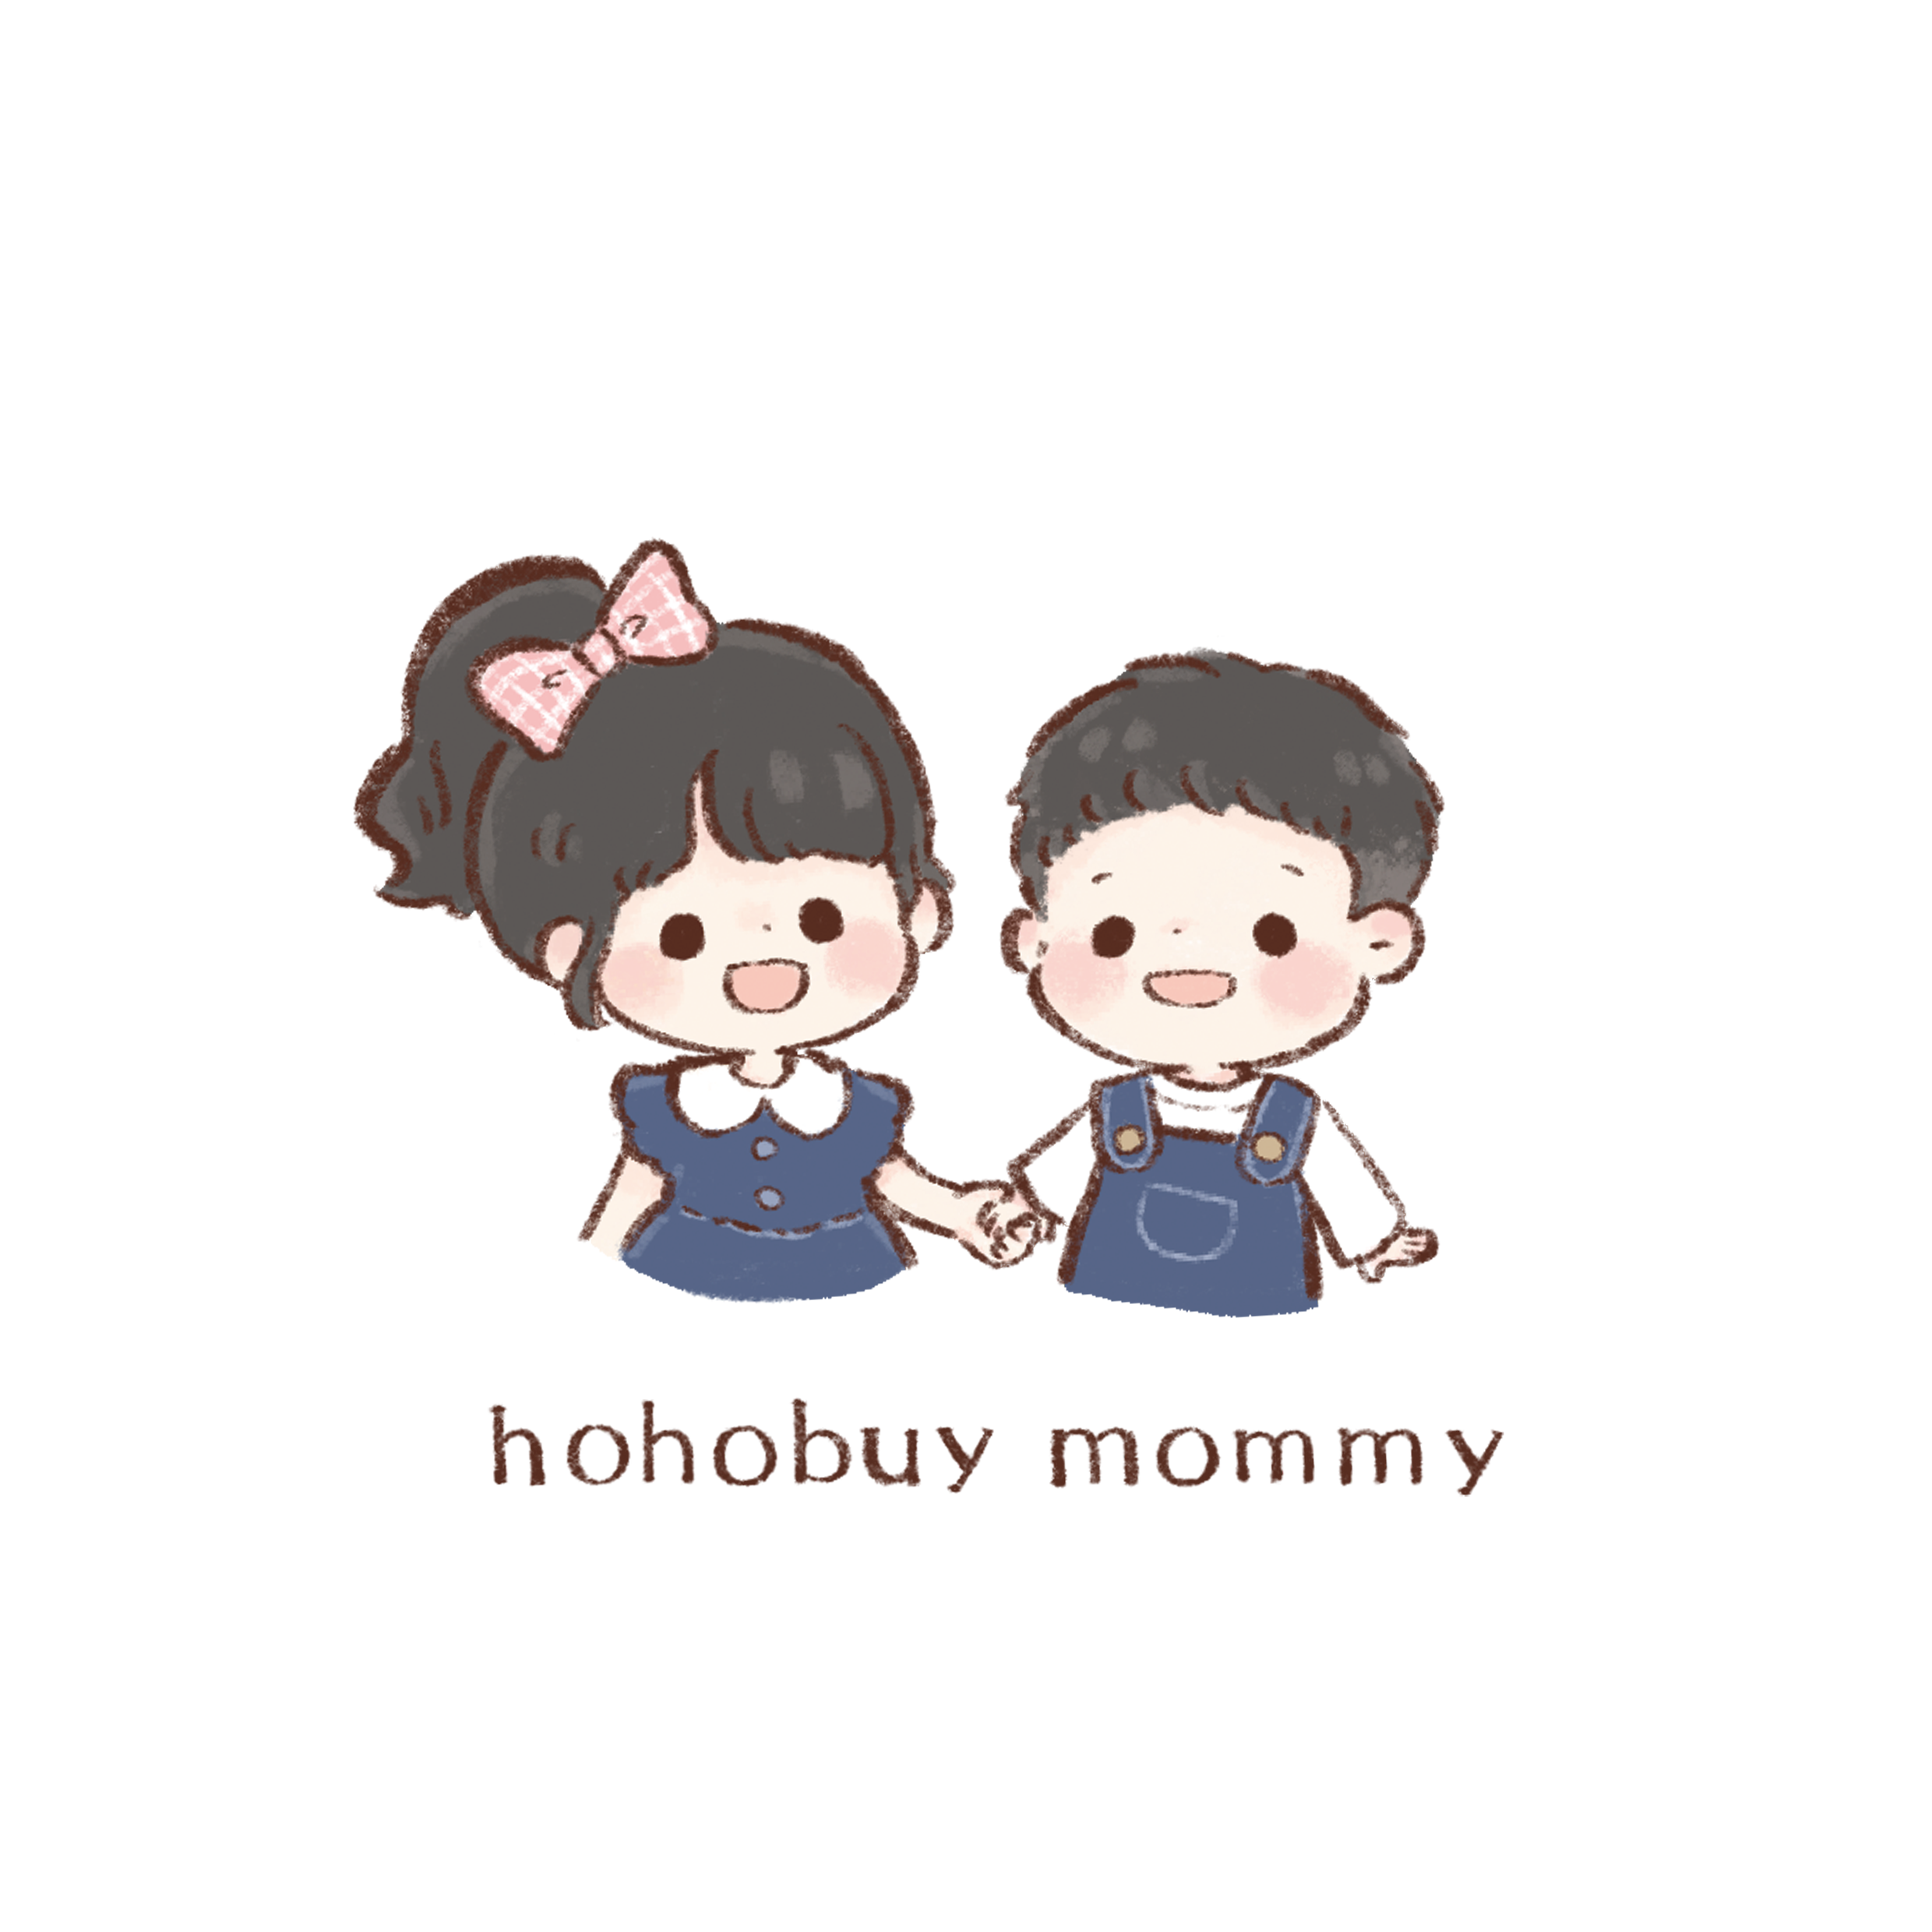 NEW印刷hohobuy_mommy透明背景